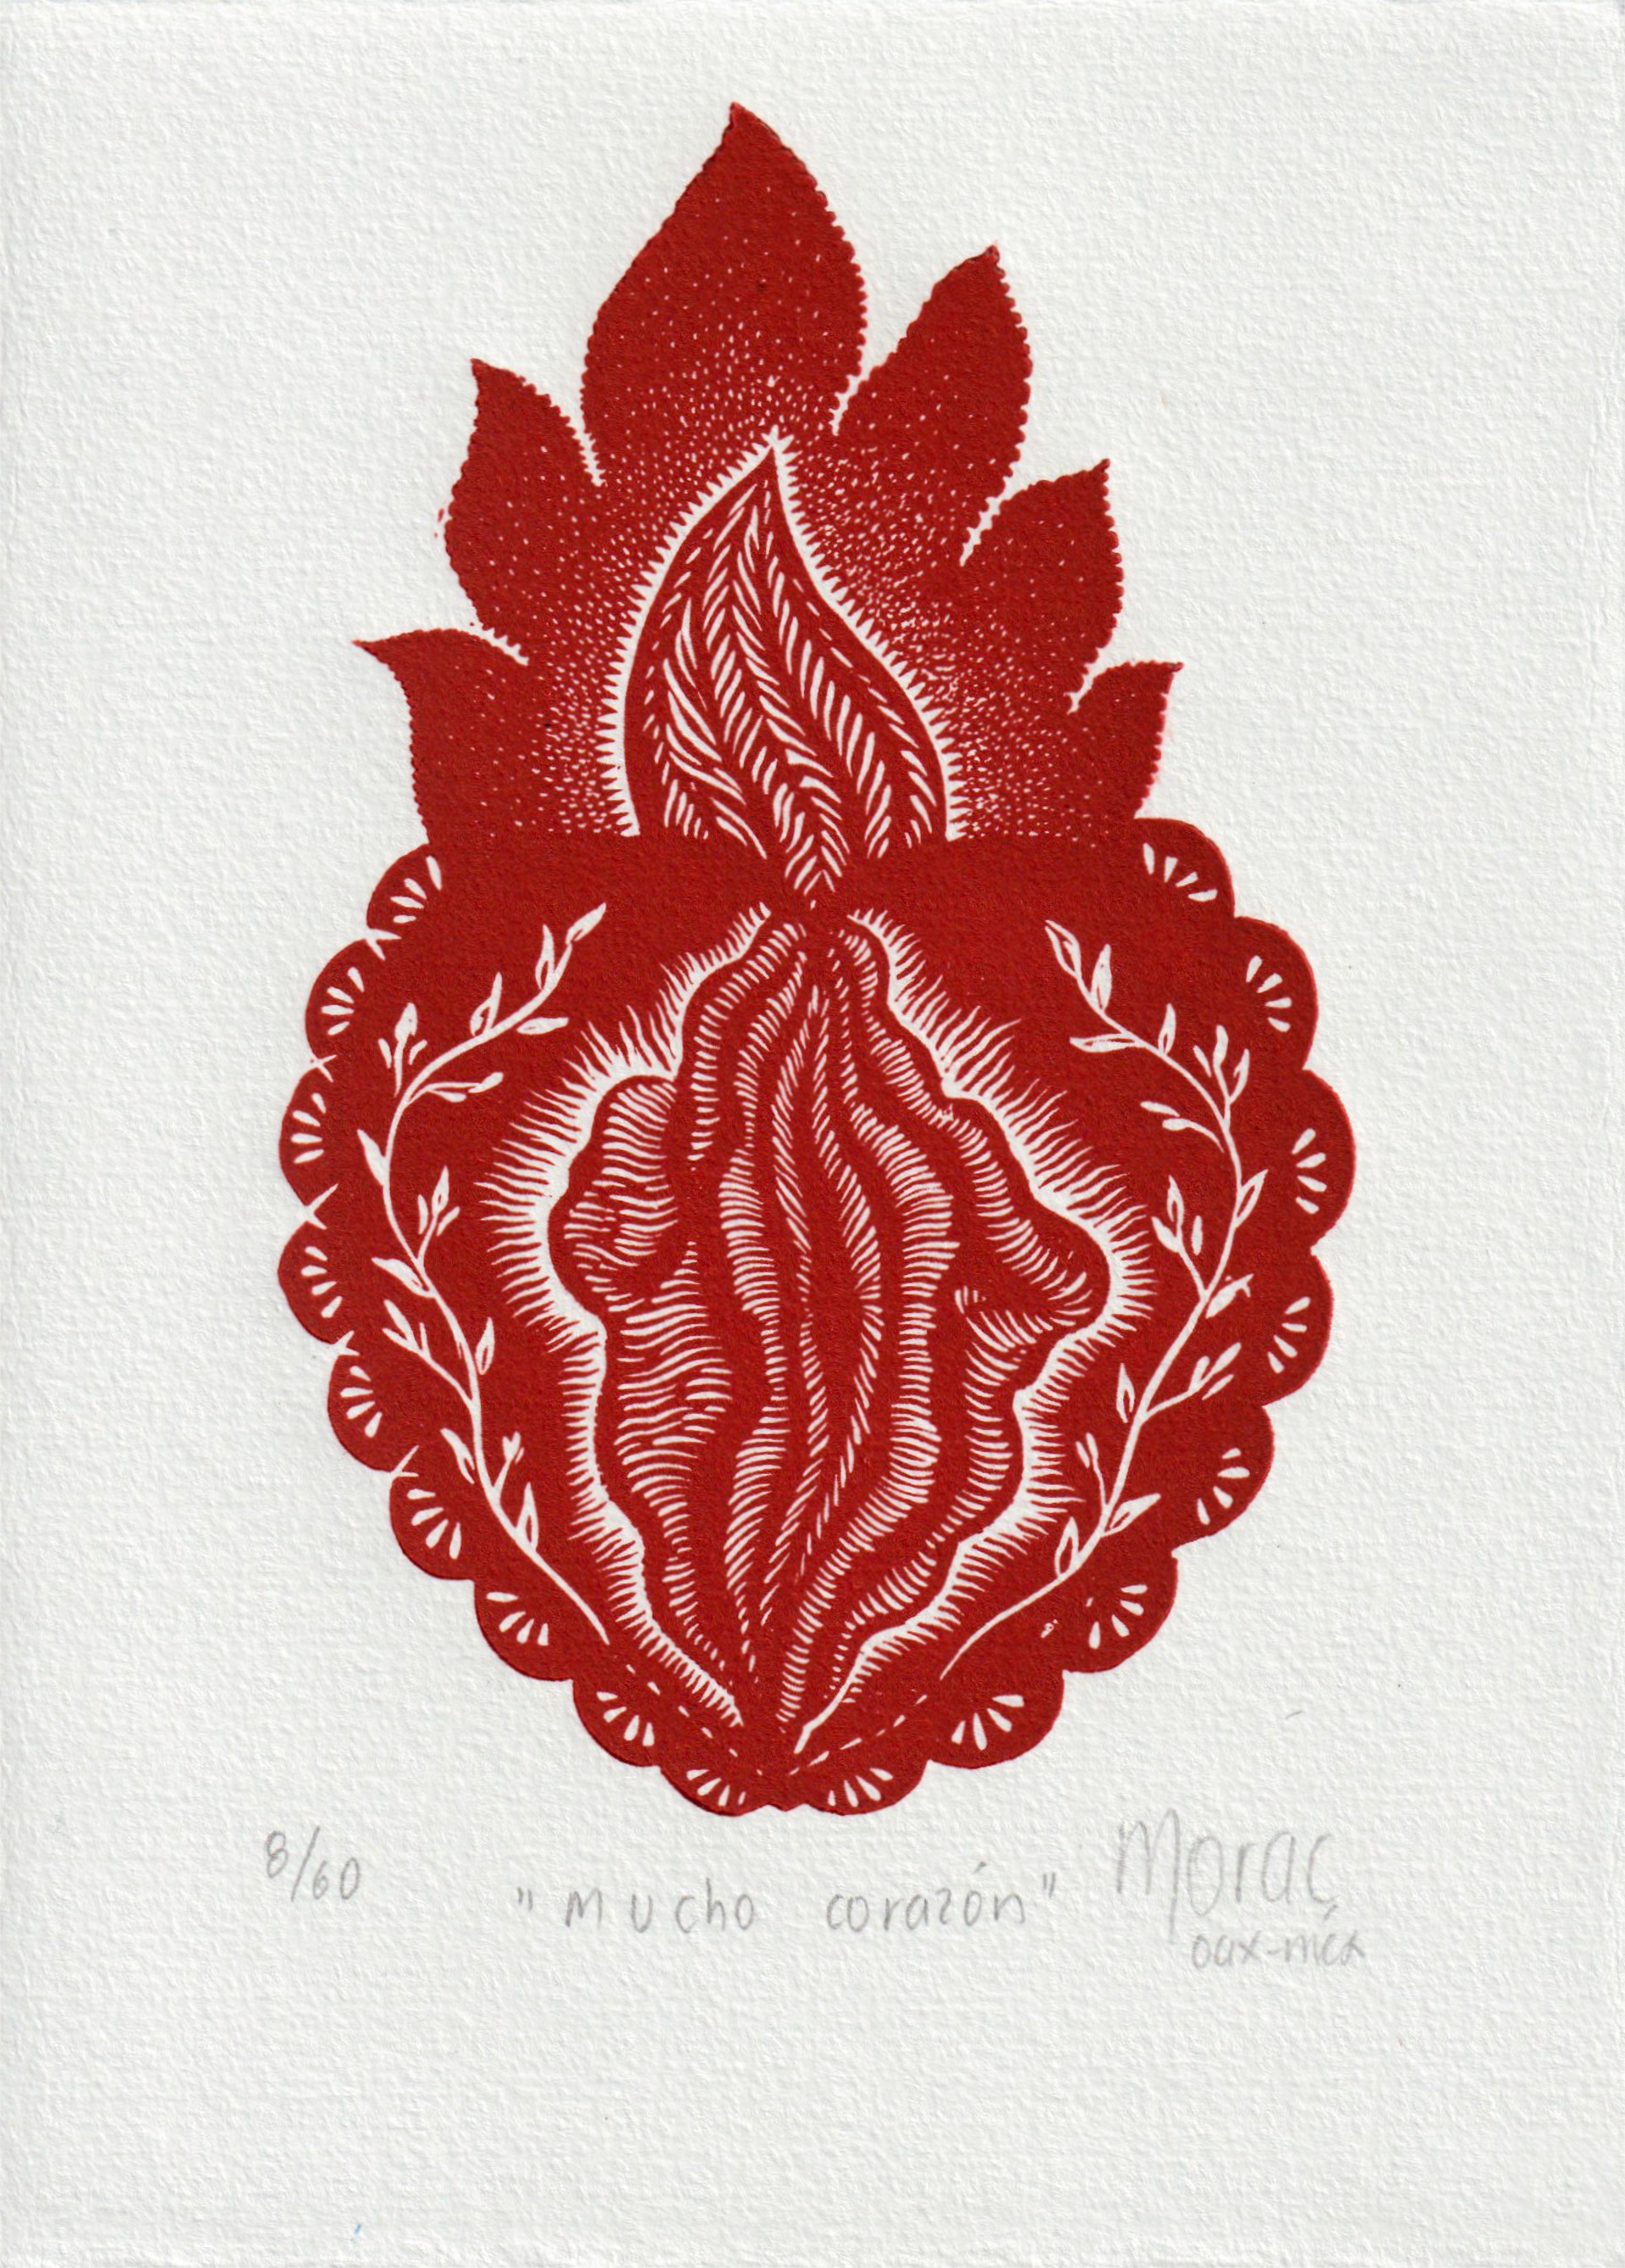 Mucho Corazón by Gabriela Morac